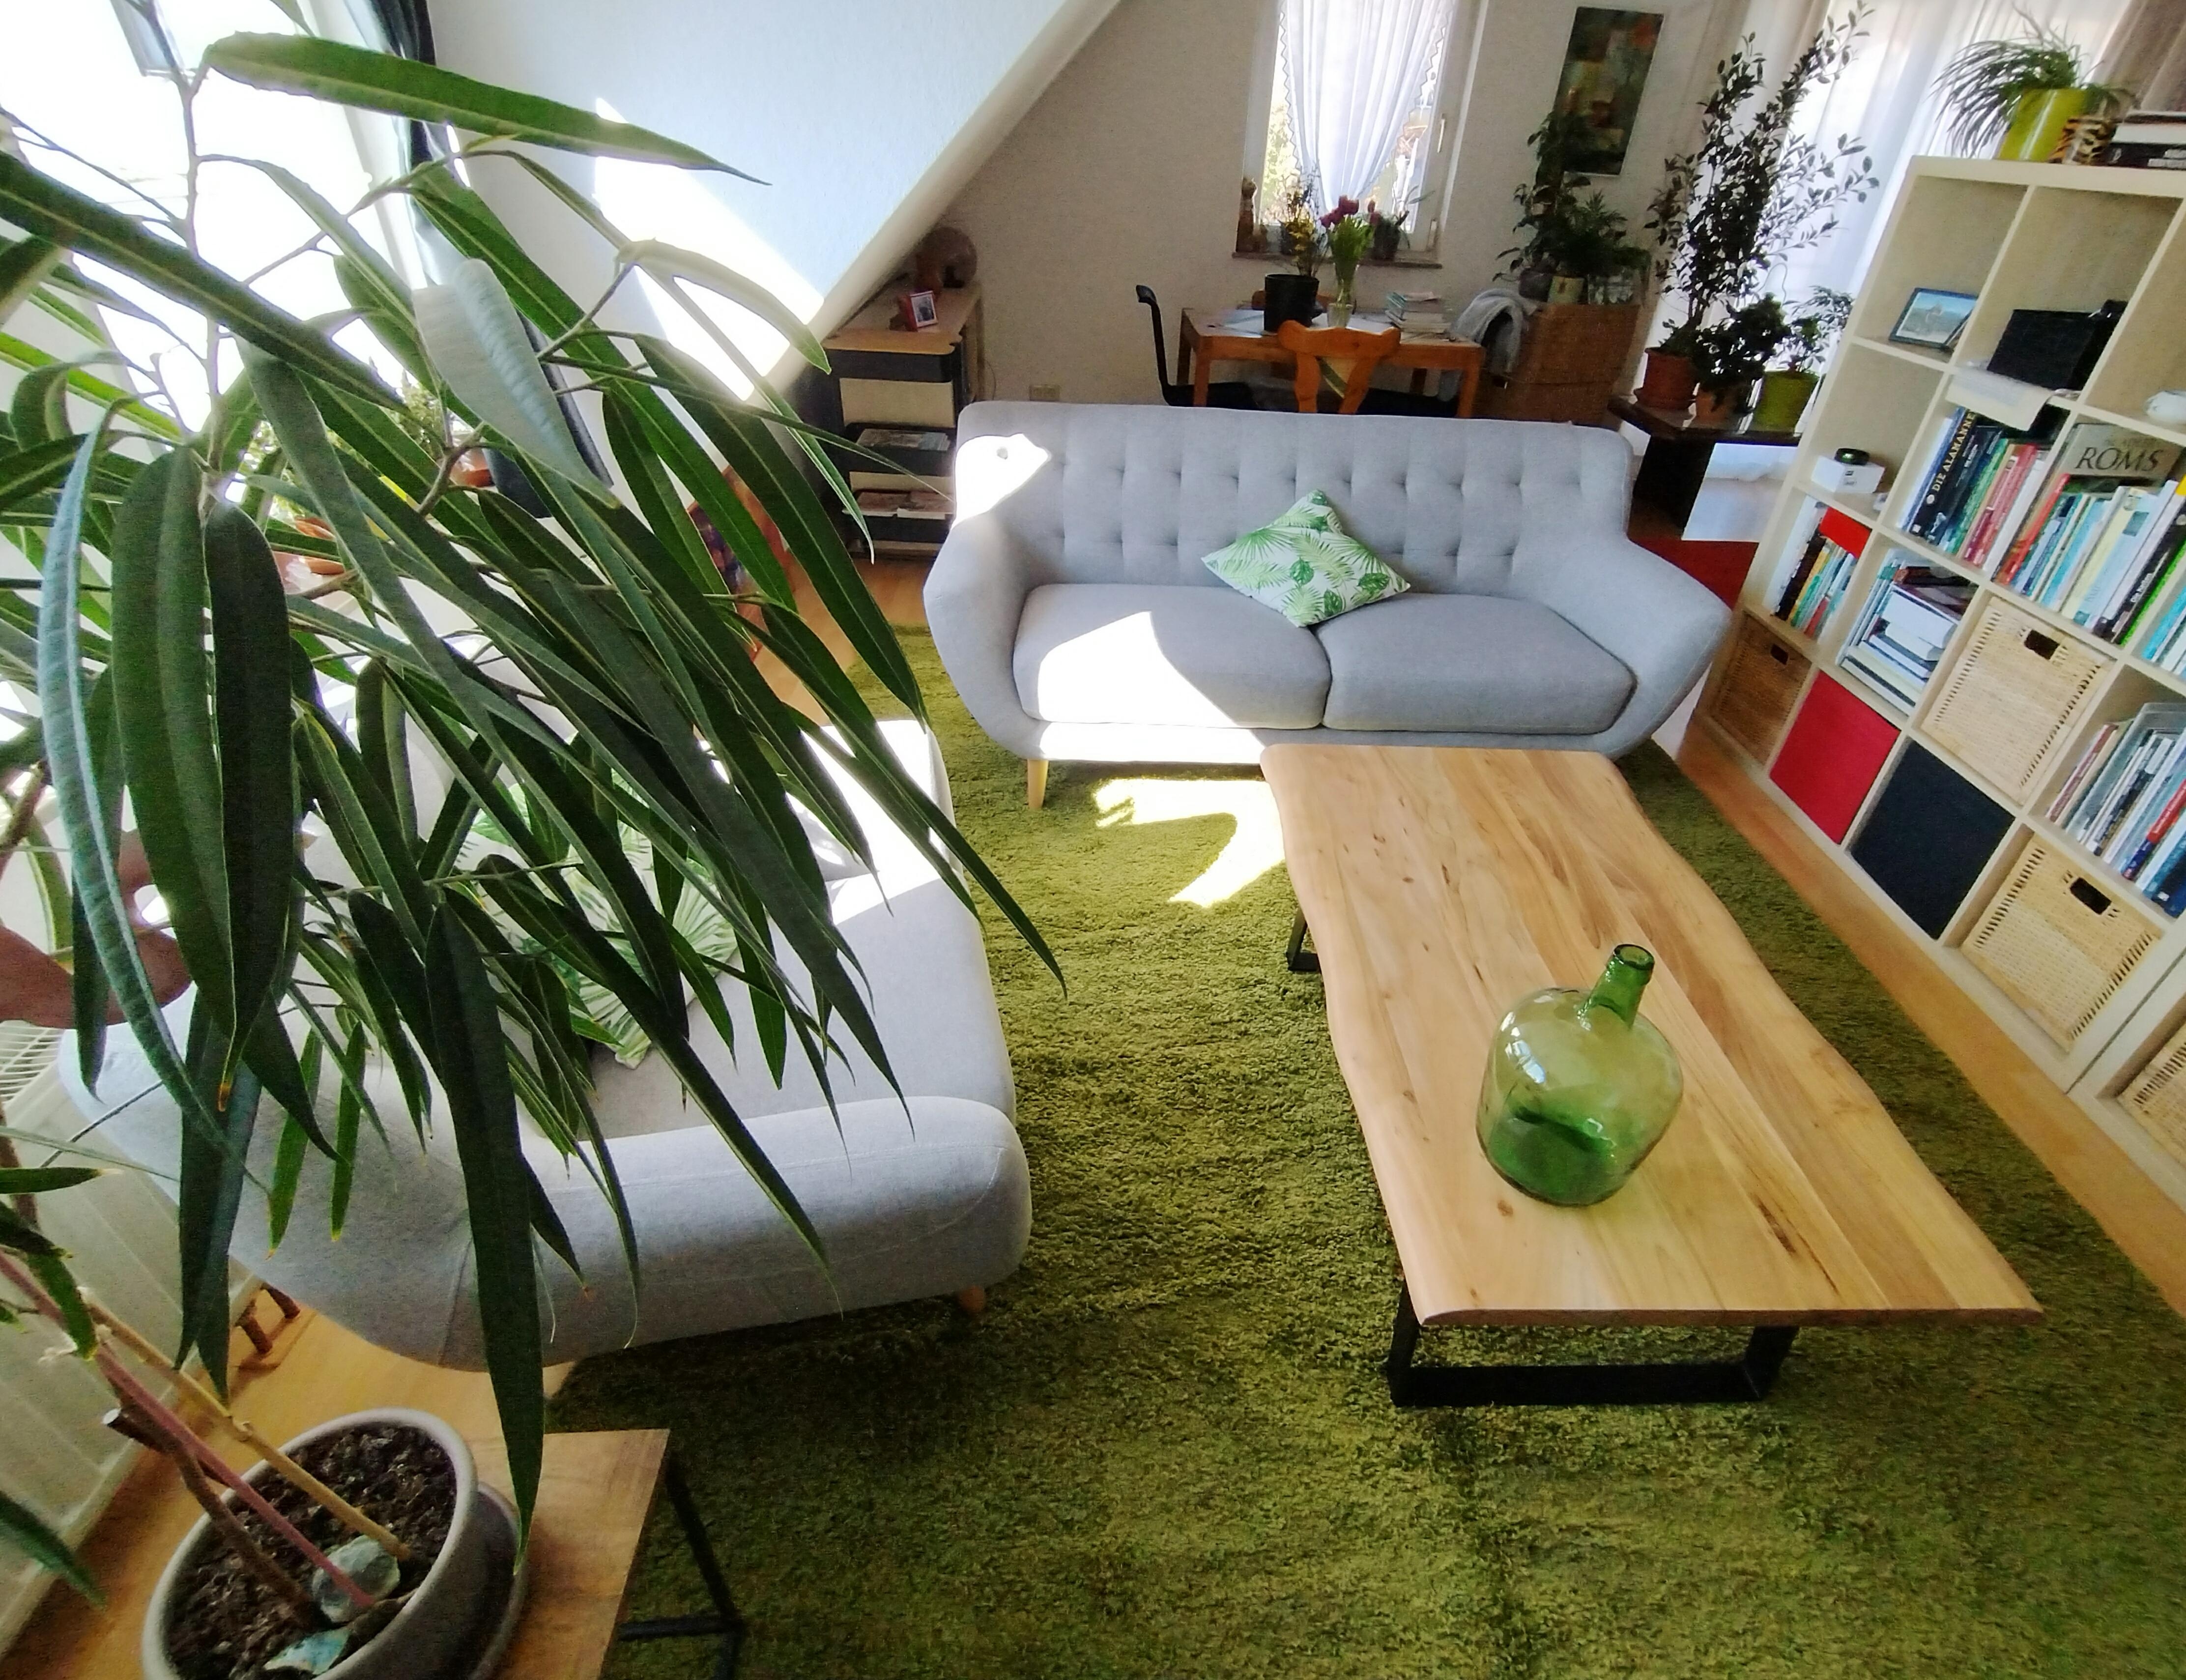 💚
#wohnzimmer #makeover #couchtisch #sofa #sessel #teppich #grün #pflanzen